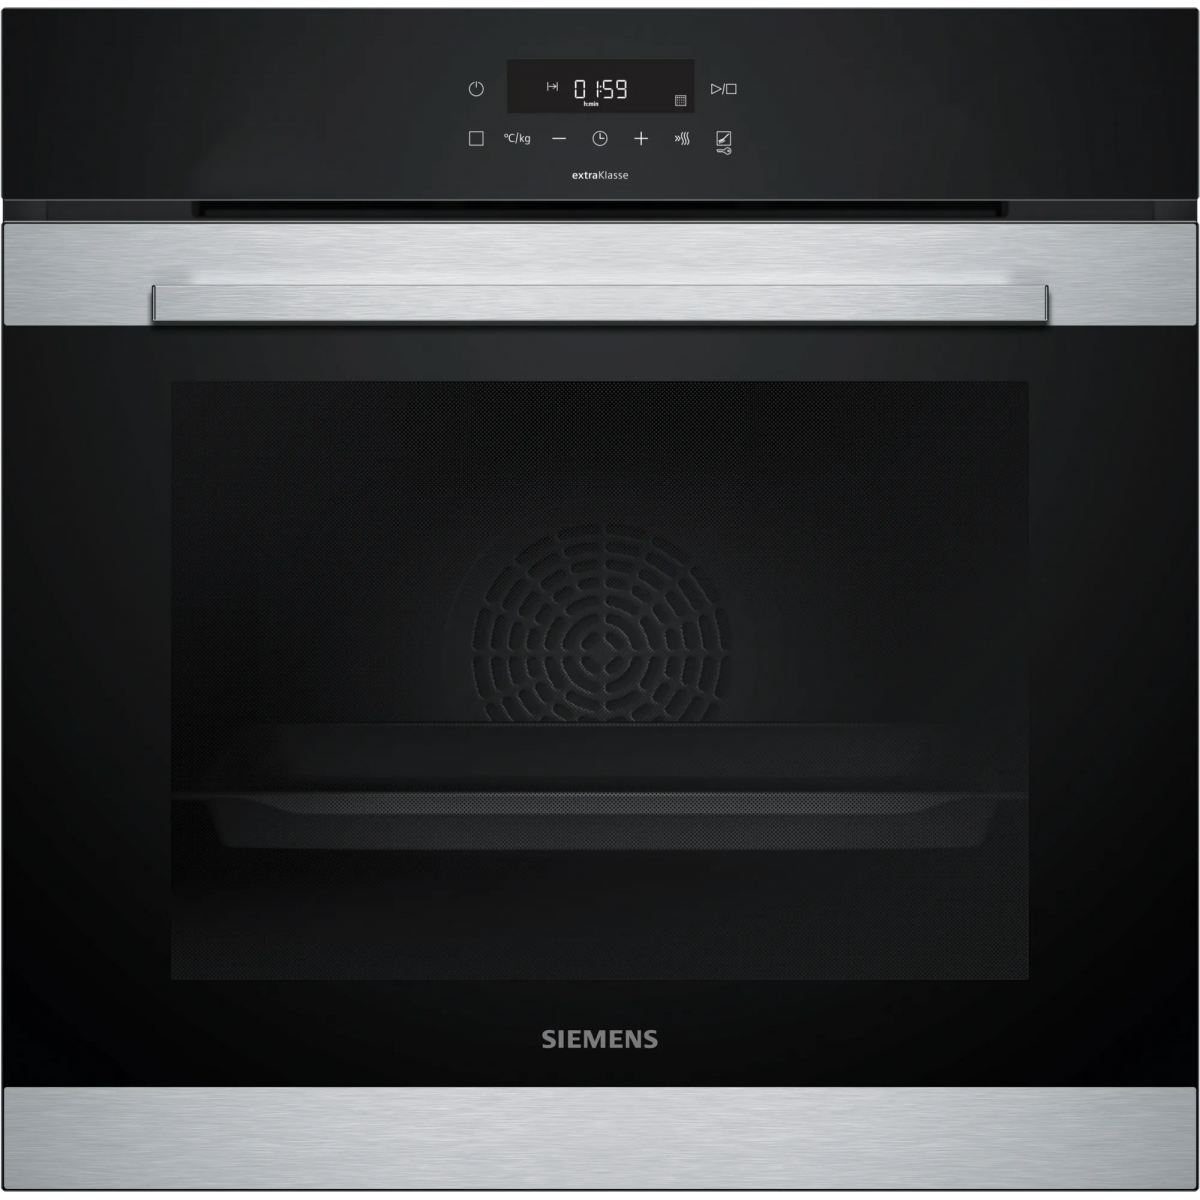 Preventie vier keer Geneigd zijn HR372ABS0S iQ300 Multifunctionele oven met Added Steam 60 x 60 cm Inox